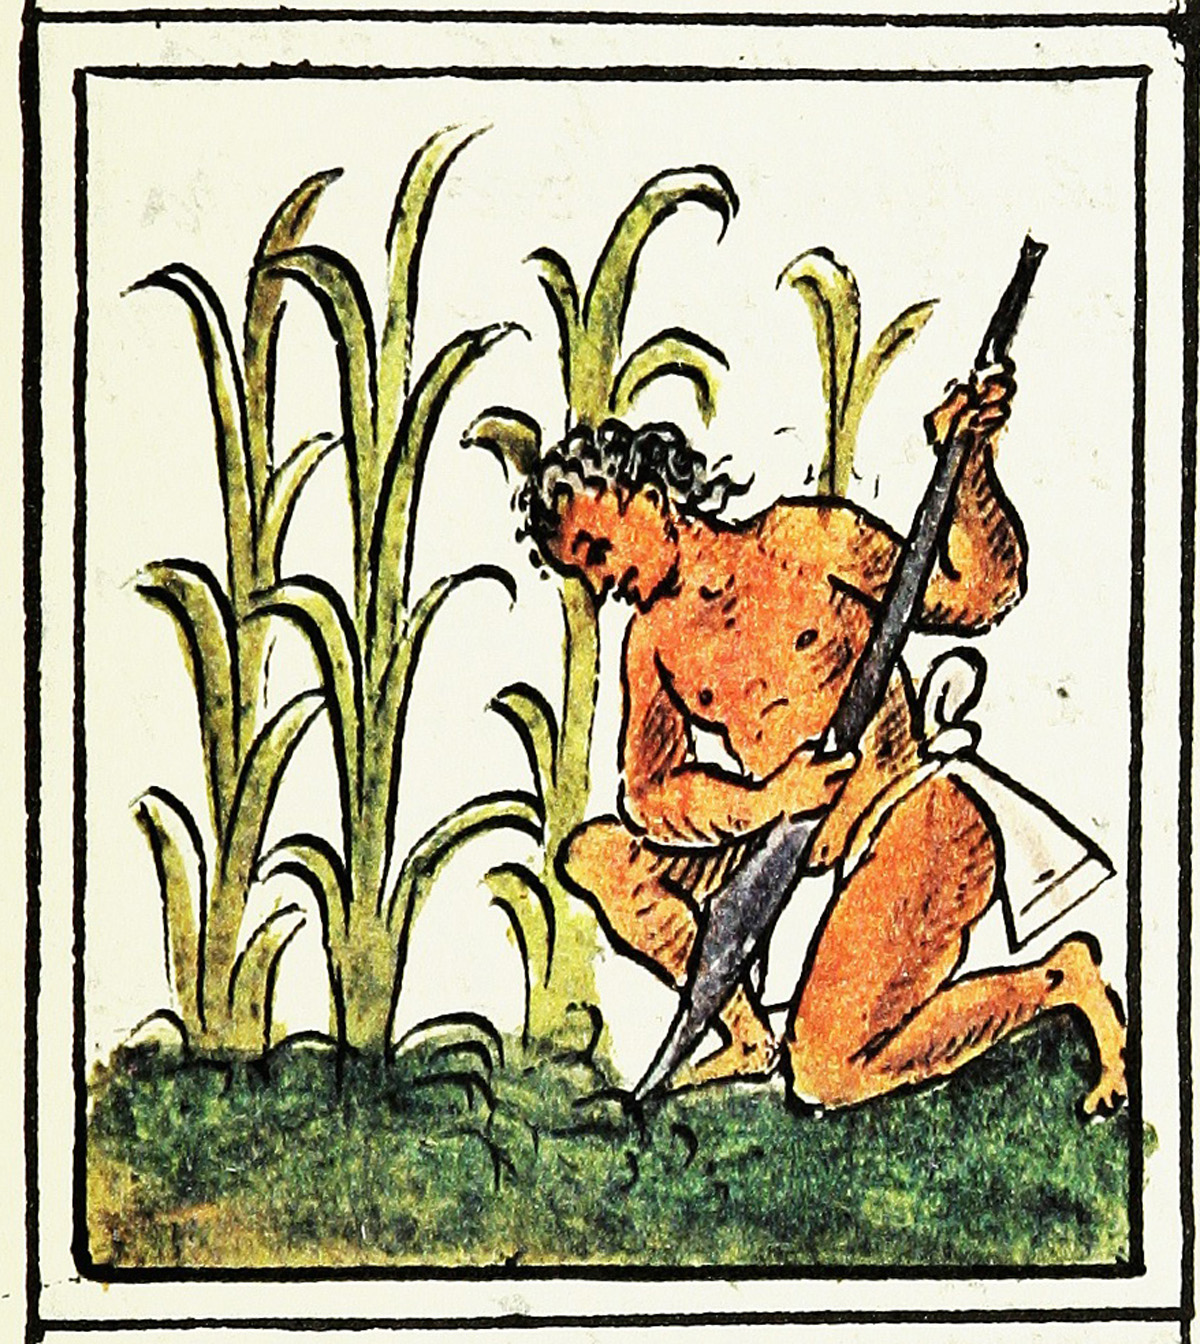 Hombre cultivando maíz, Códice Florentino, siglo XVI